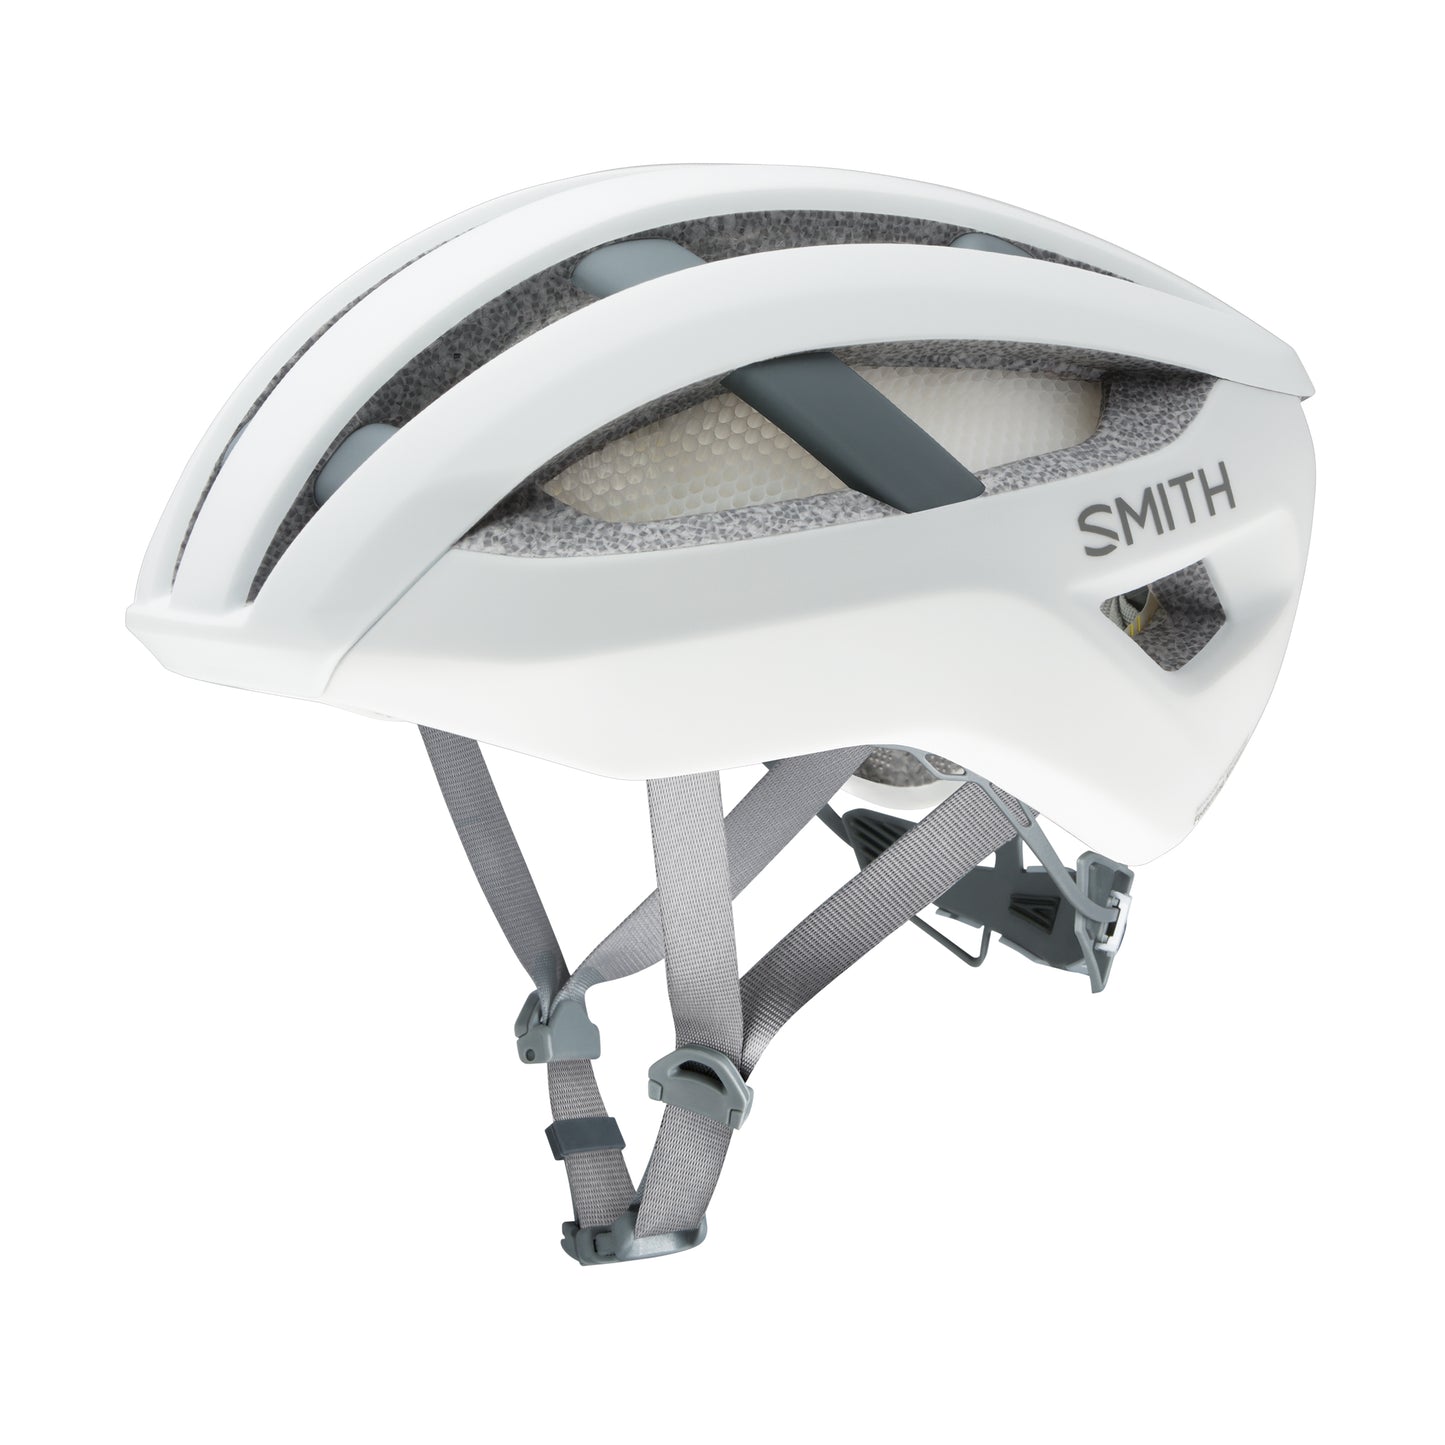 SMITH Network Mips Helmet